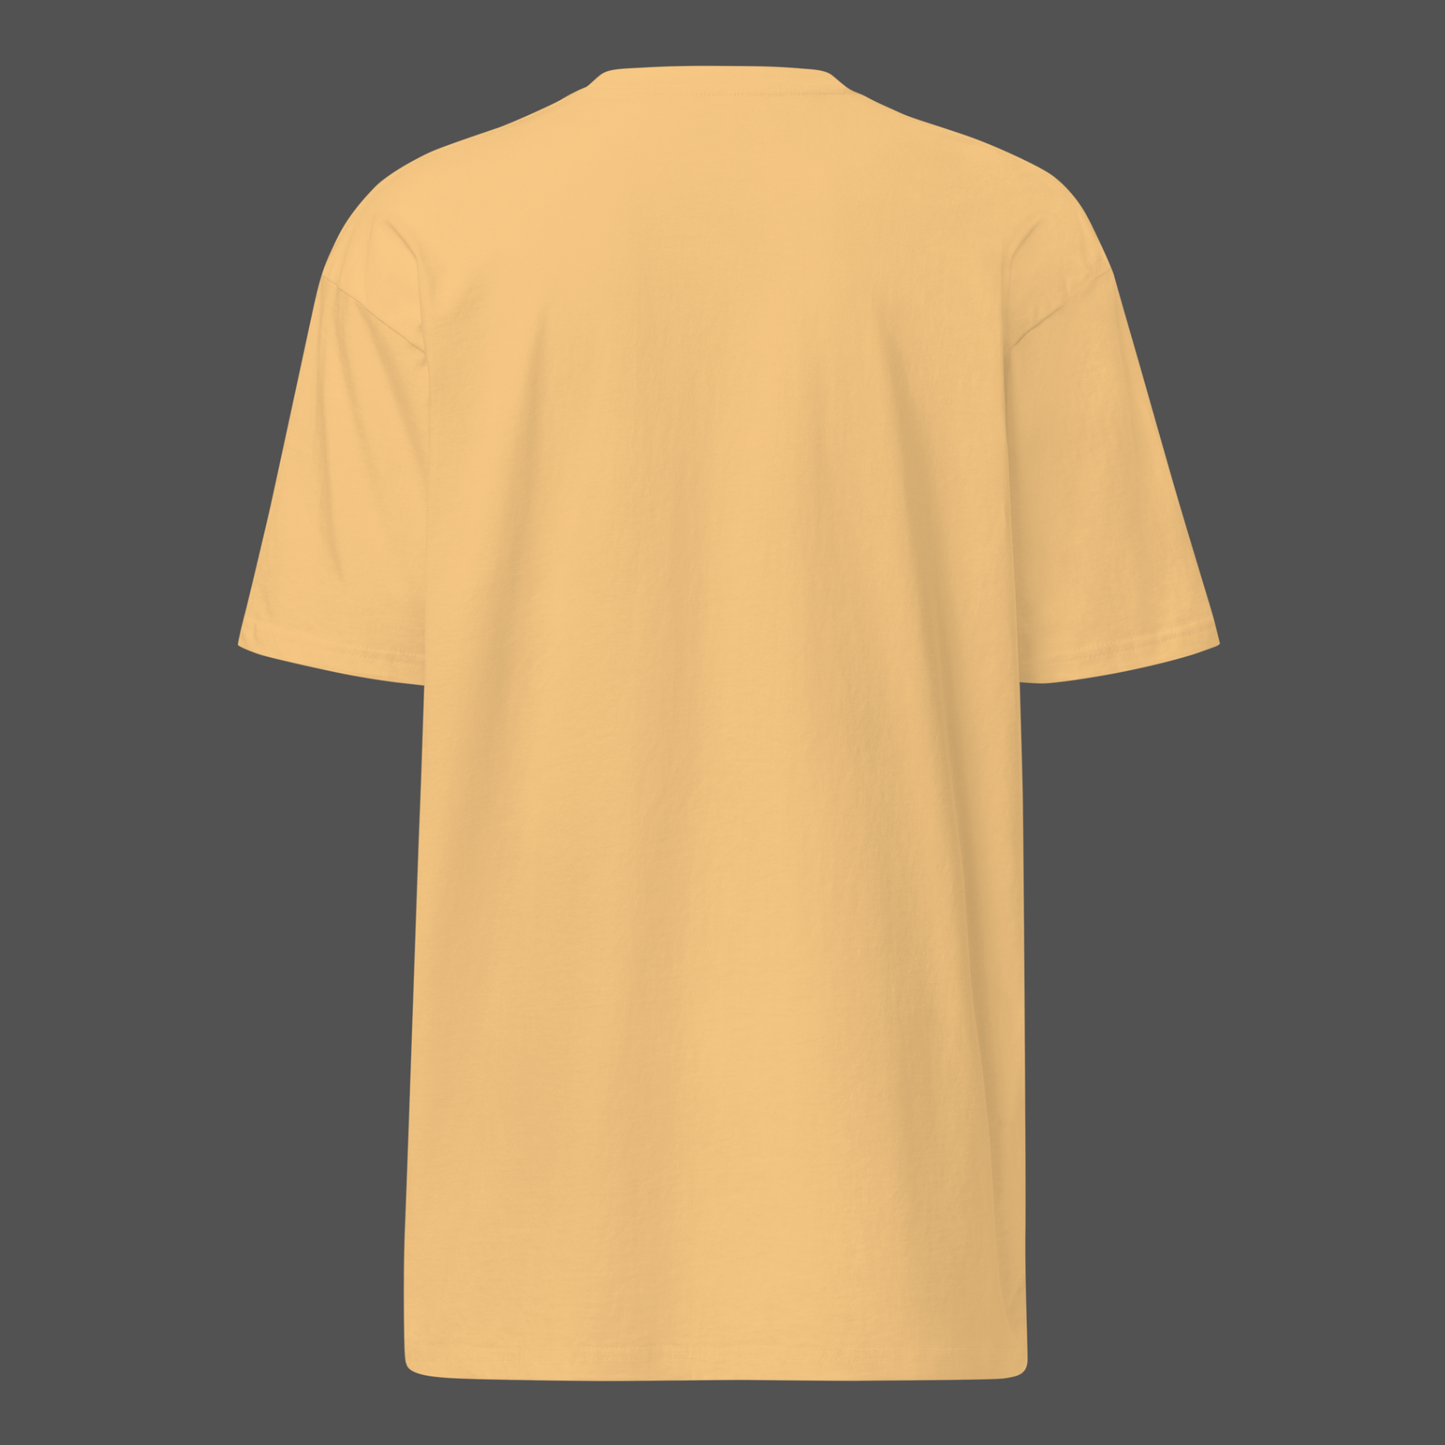 Designer Style T-Shirt Herren Shirt Verso Gold Weiß Schwarz Mode Streetwear